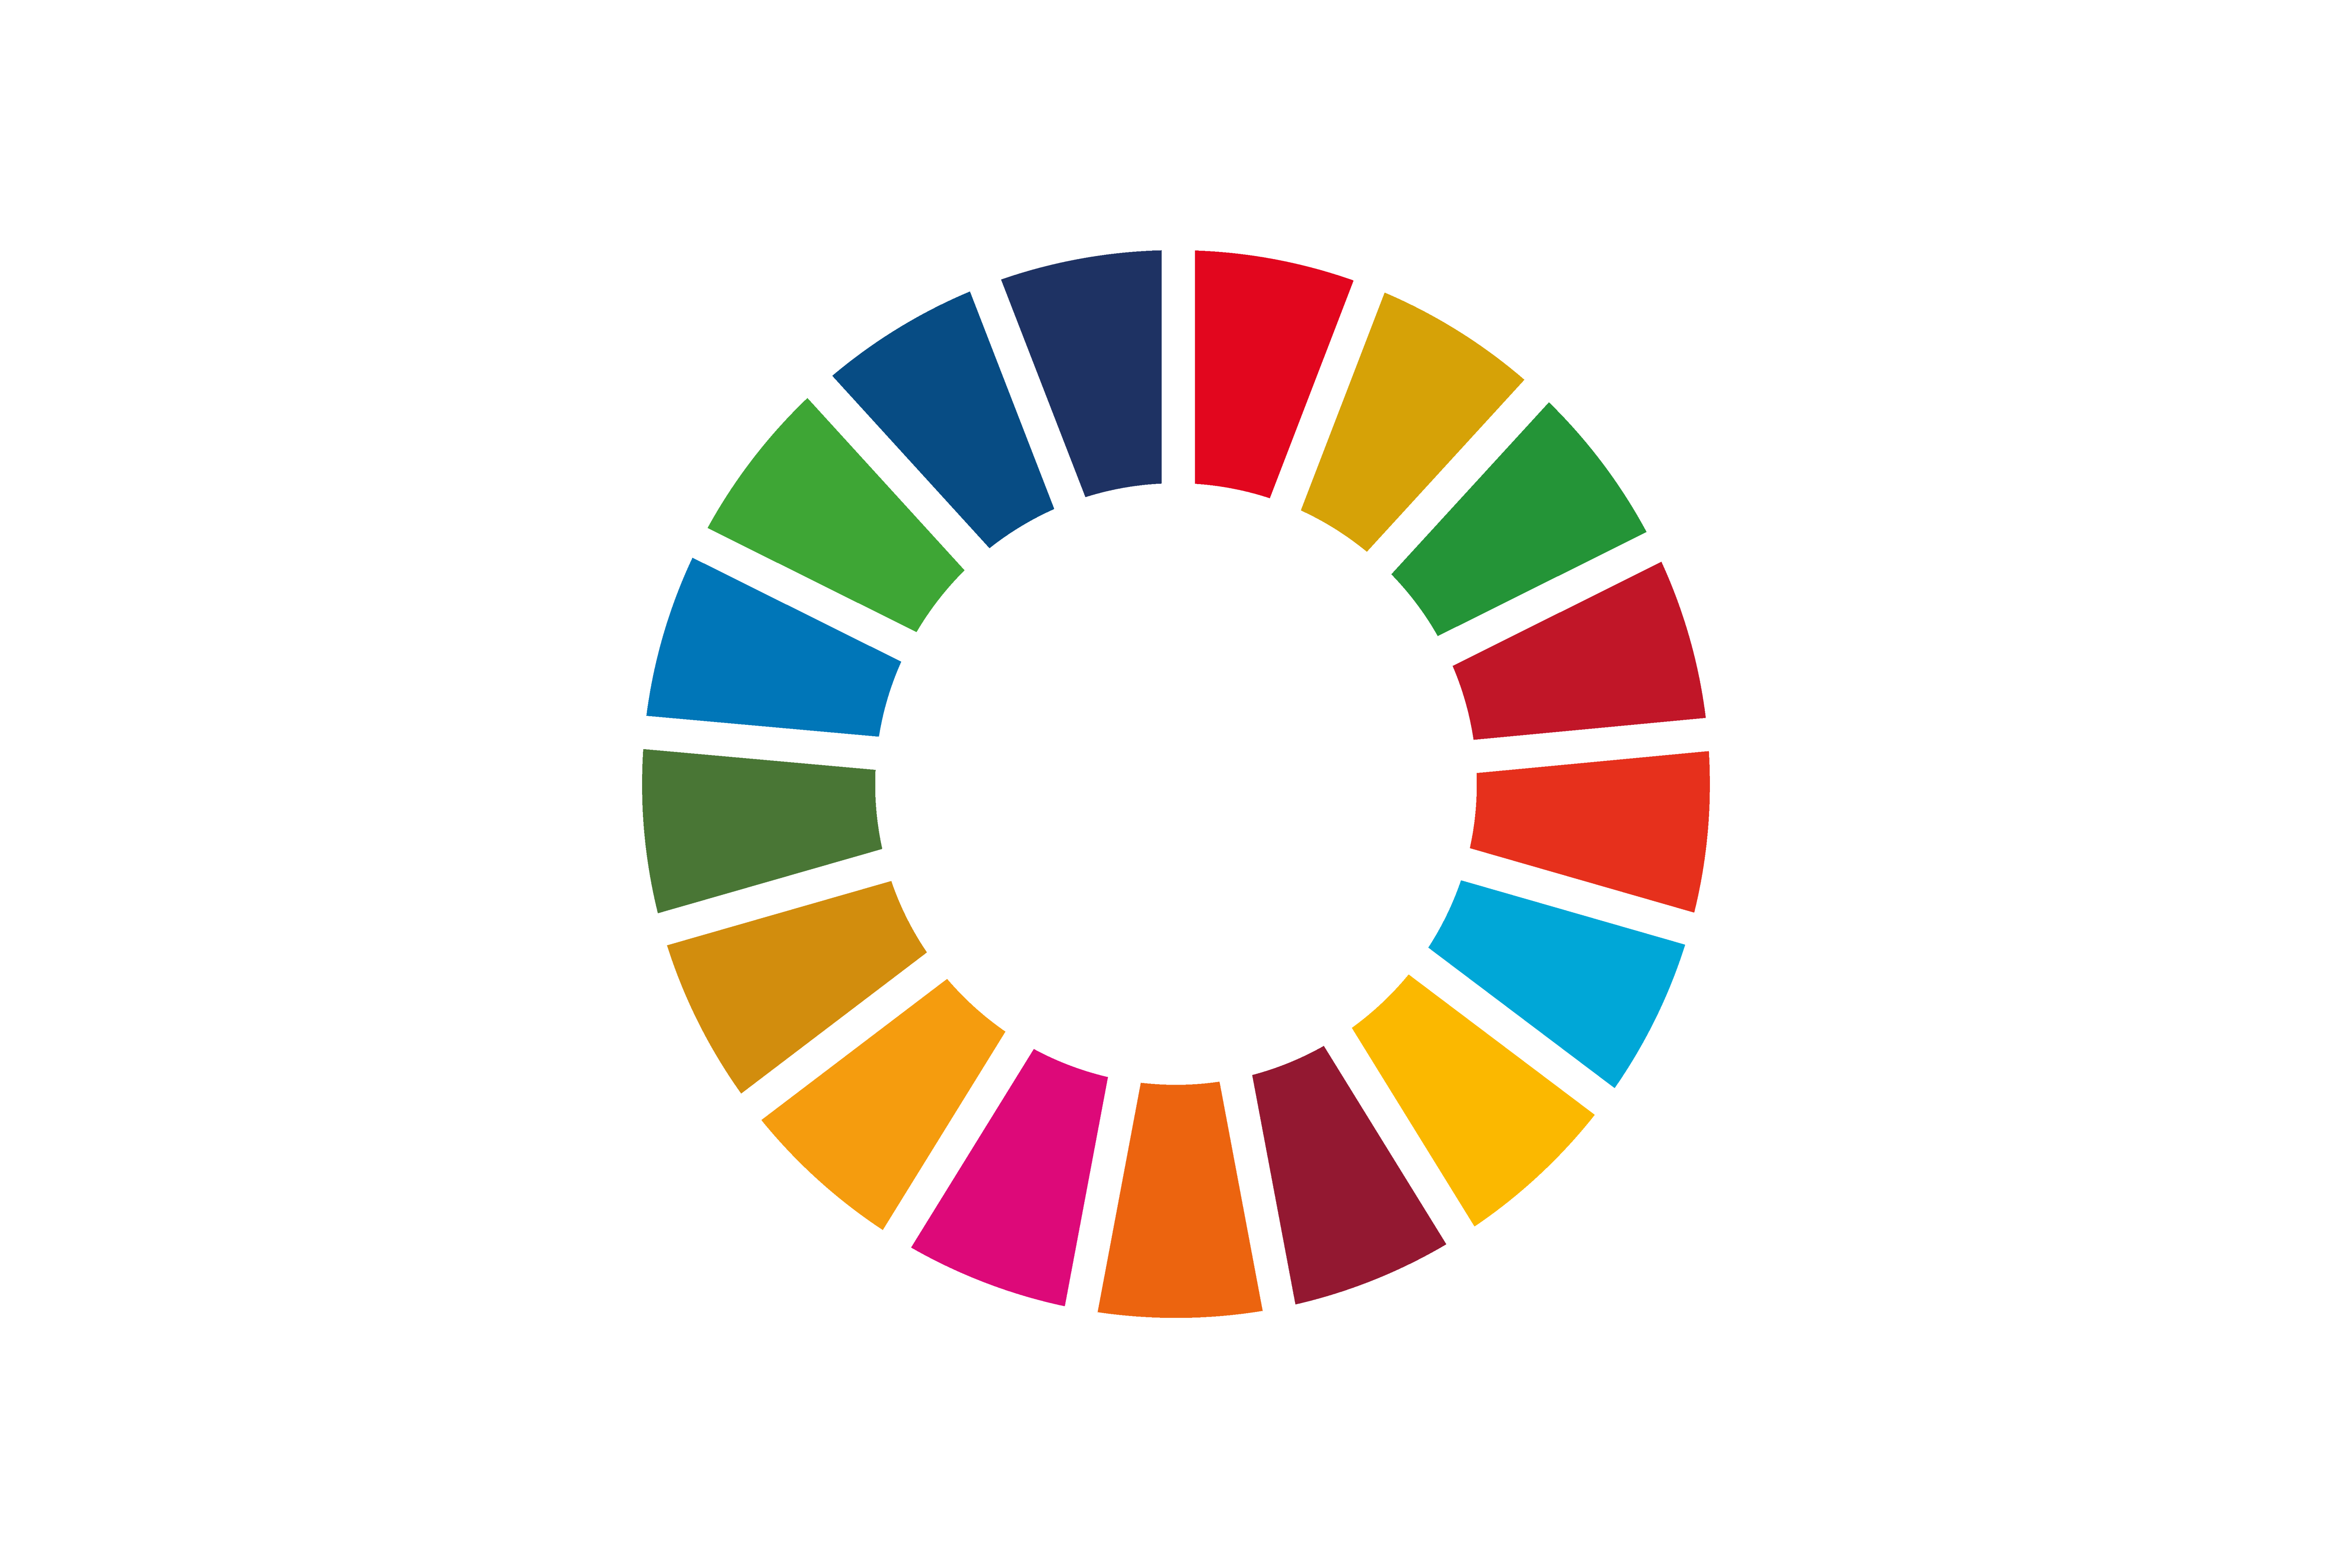 Sustainable Development Goals der Vereinten Nationen